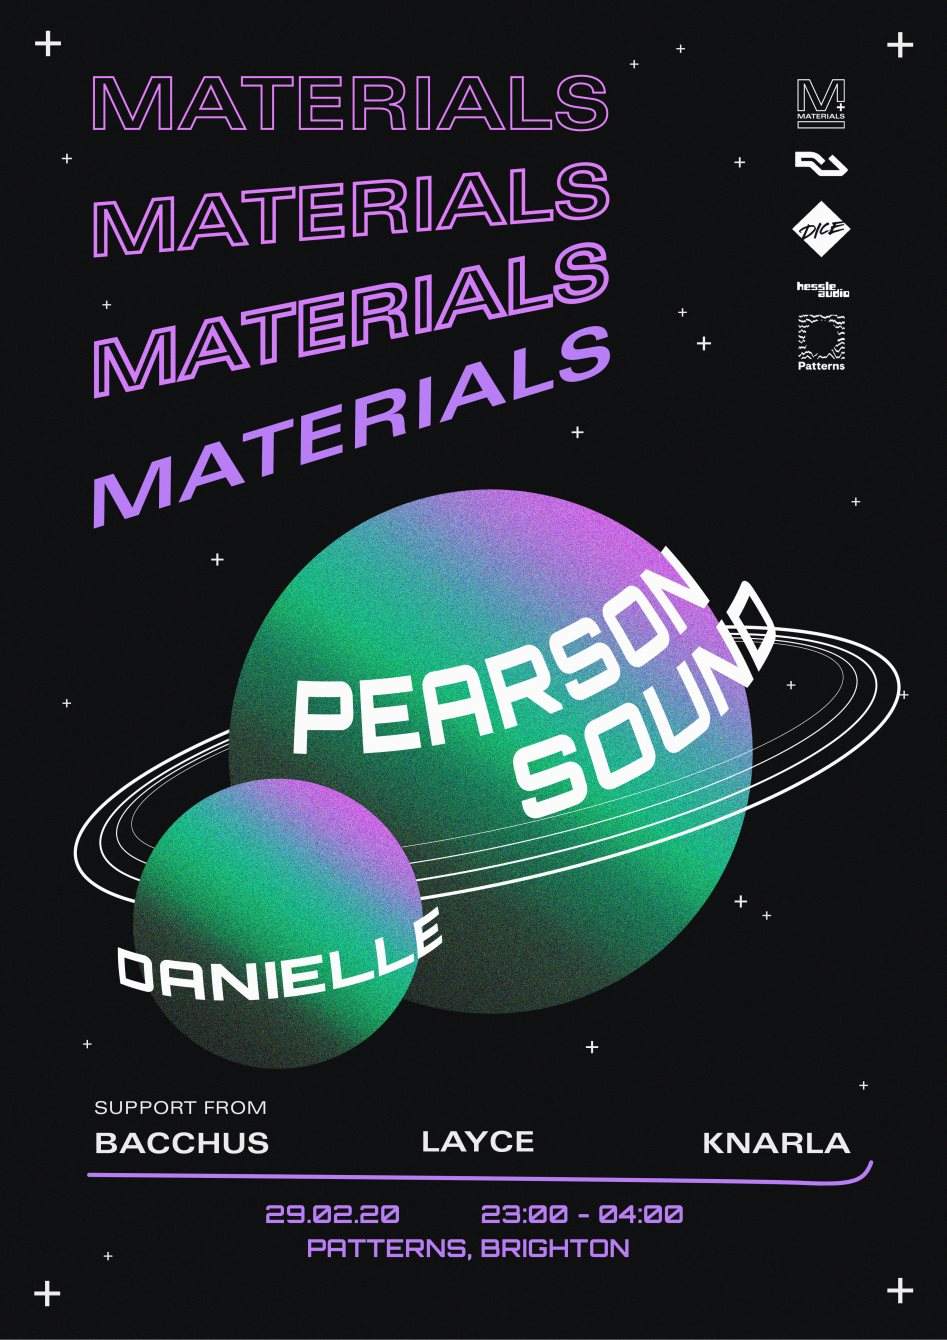 MATERIALS: Pearson Sound + Danielle - Página trasera